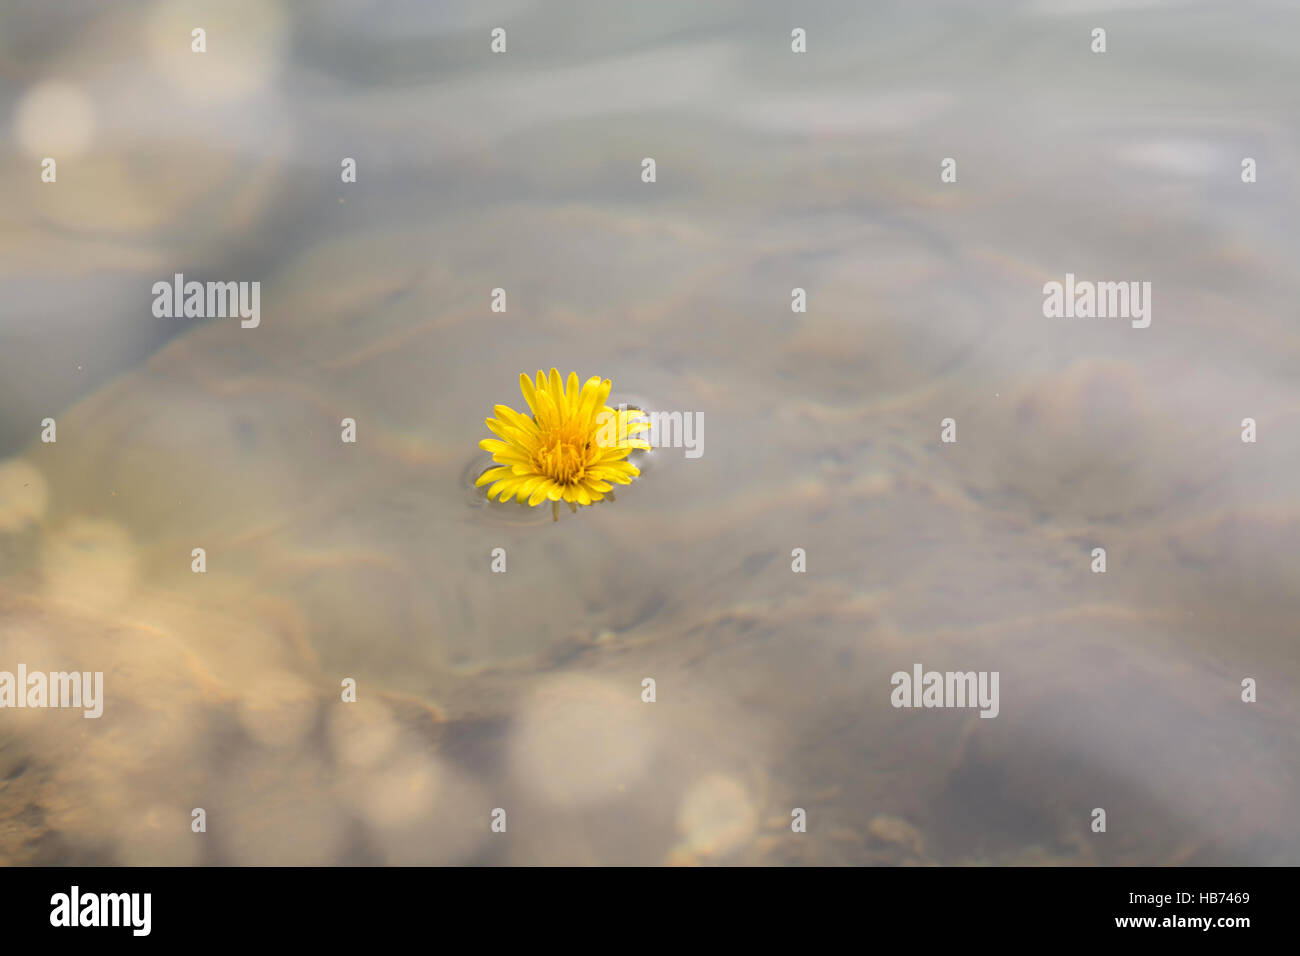 Dandelion flower in water Stock Photo